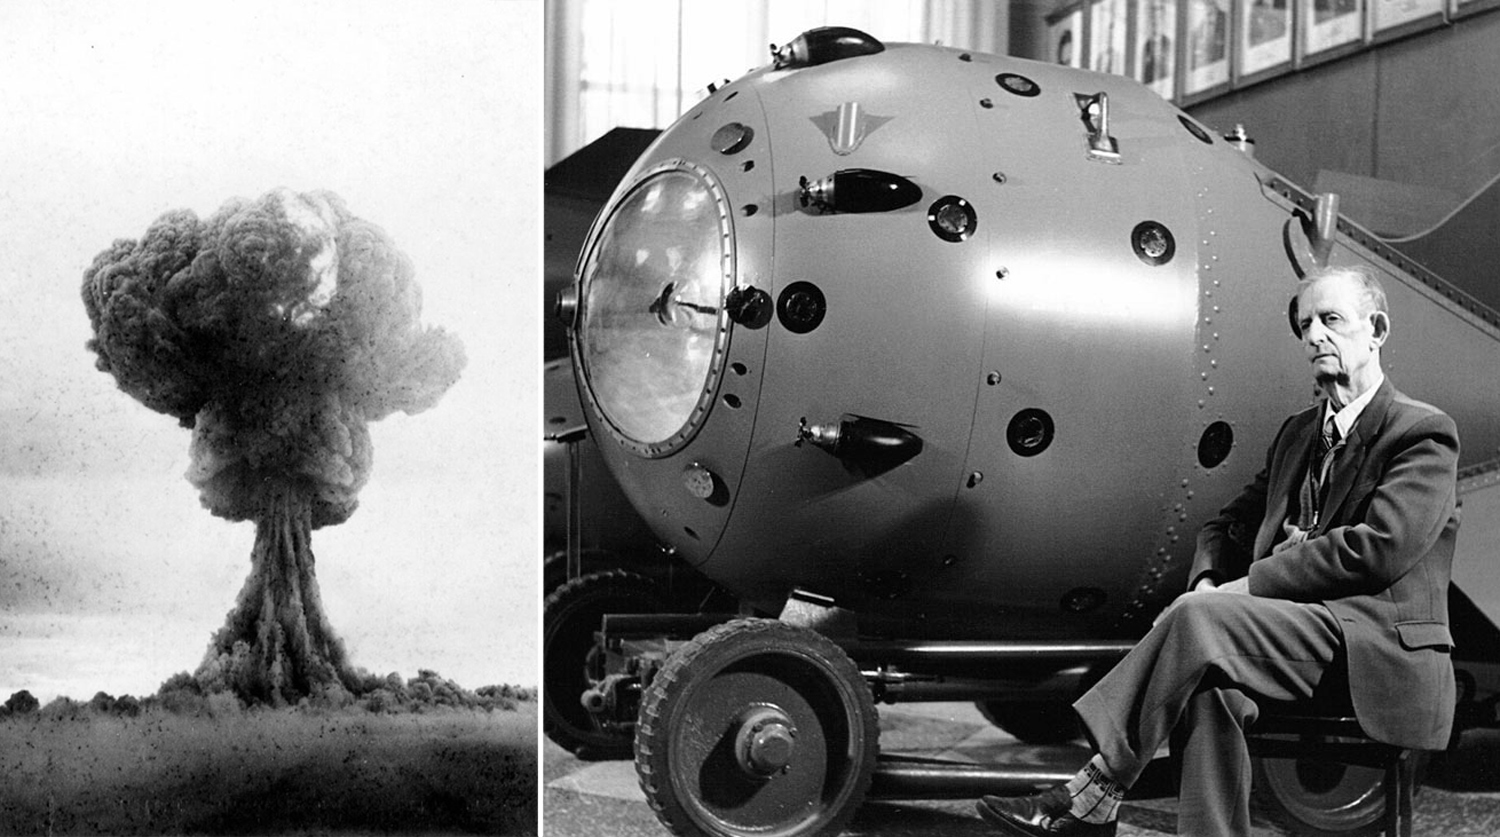 В каком году ссср появилась атомная бомба. Первая Советская атомная бомба РДС-1. Советская атомная бомба 1949. Испытание первой атомной бомбы в СССР. РДС-1. Ядерная бомба СССР РДС 1.